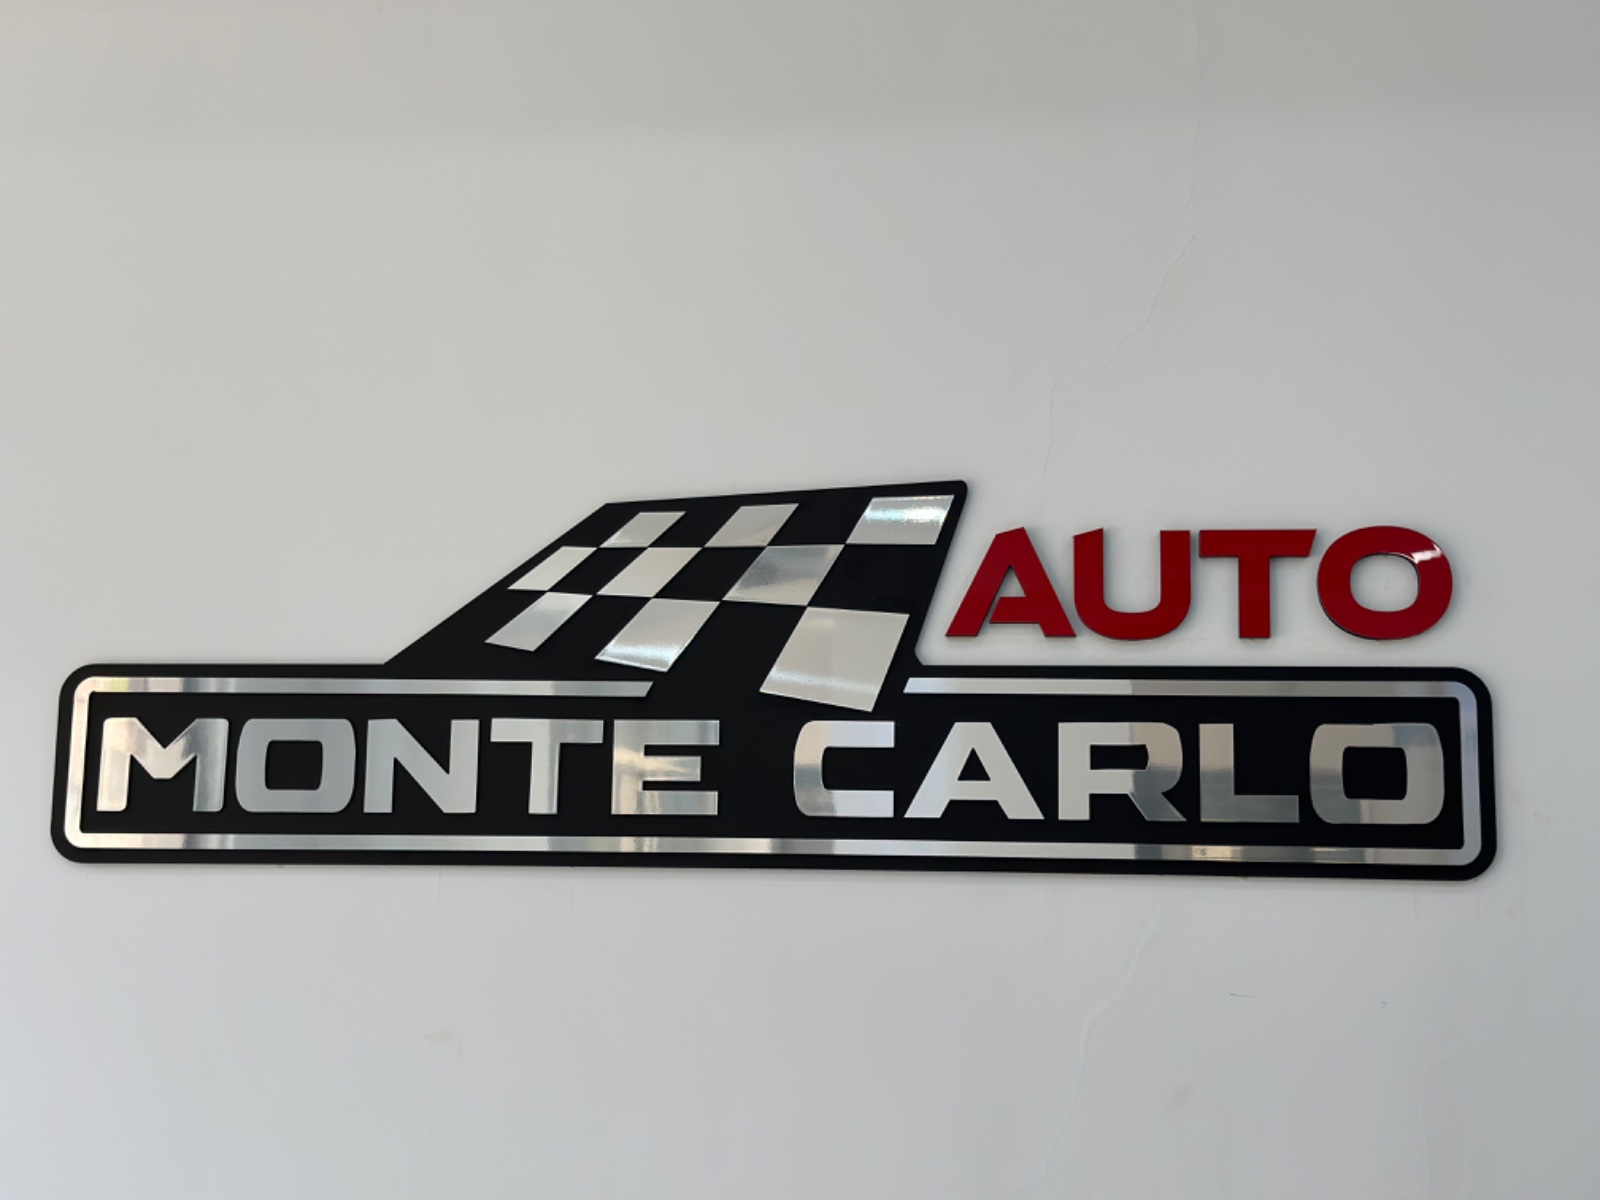 Monte Carlo Auto